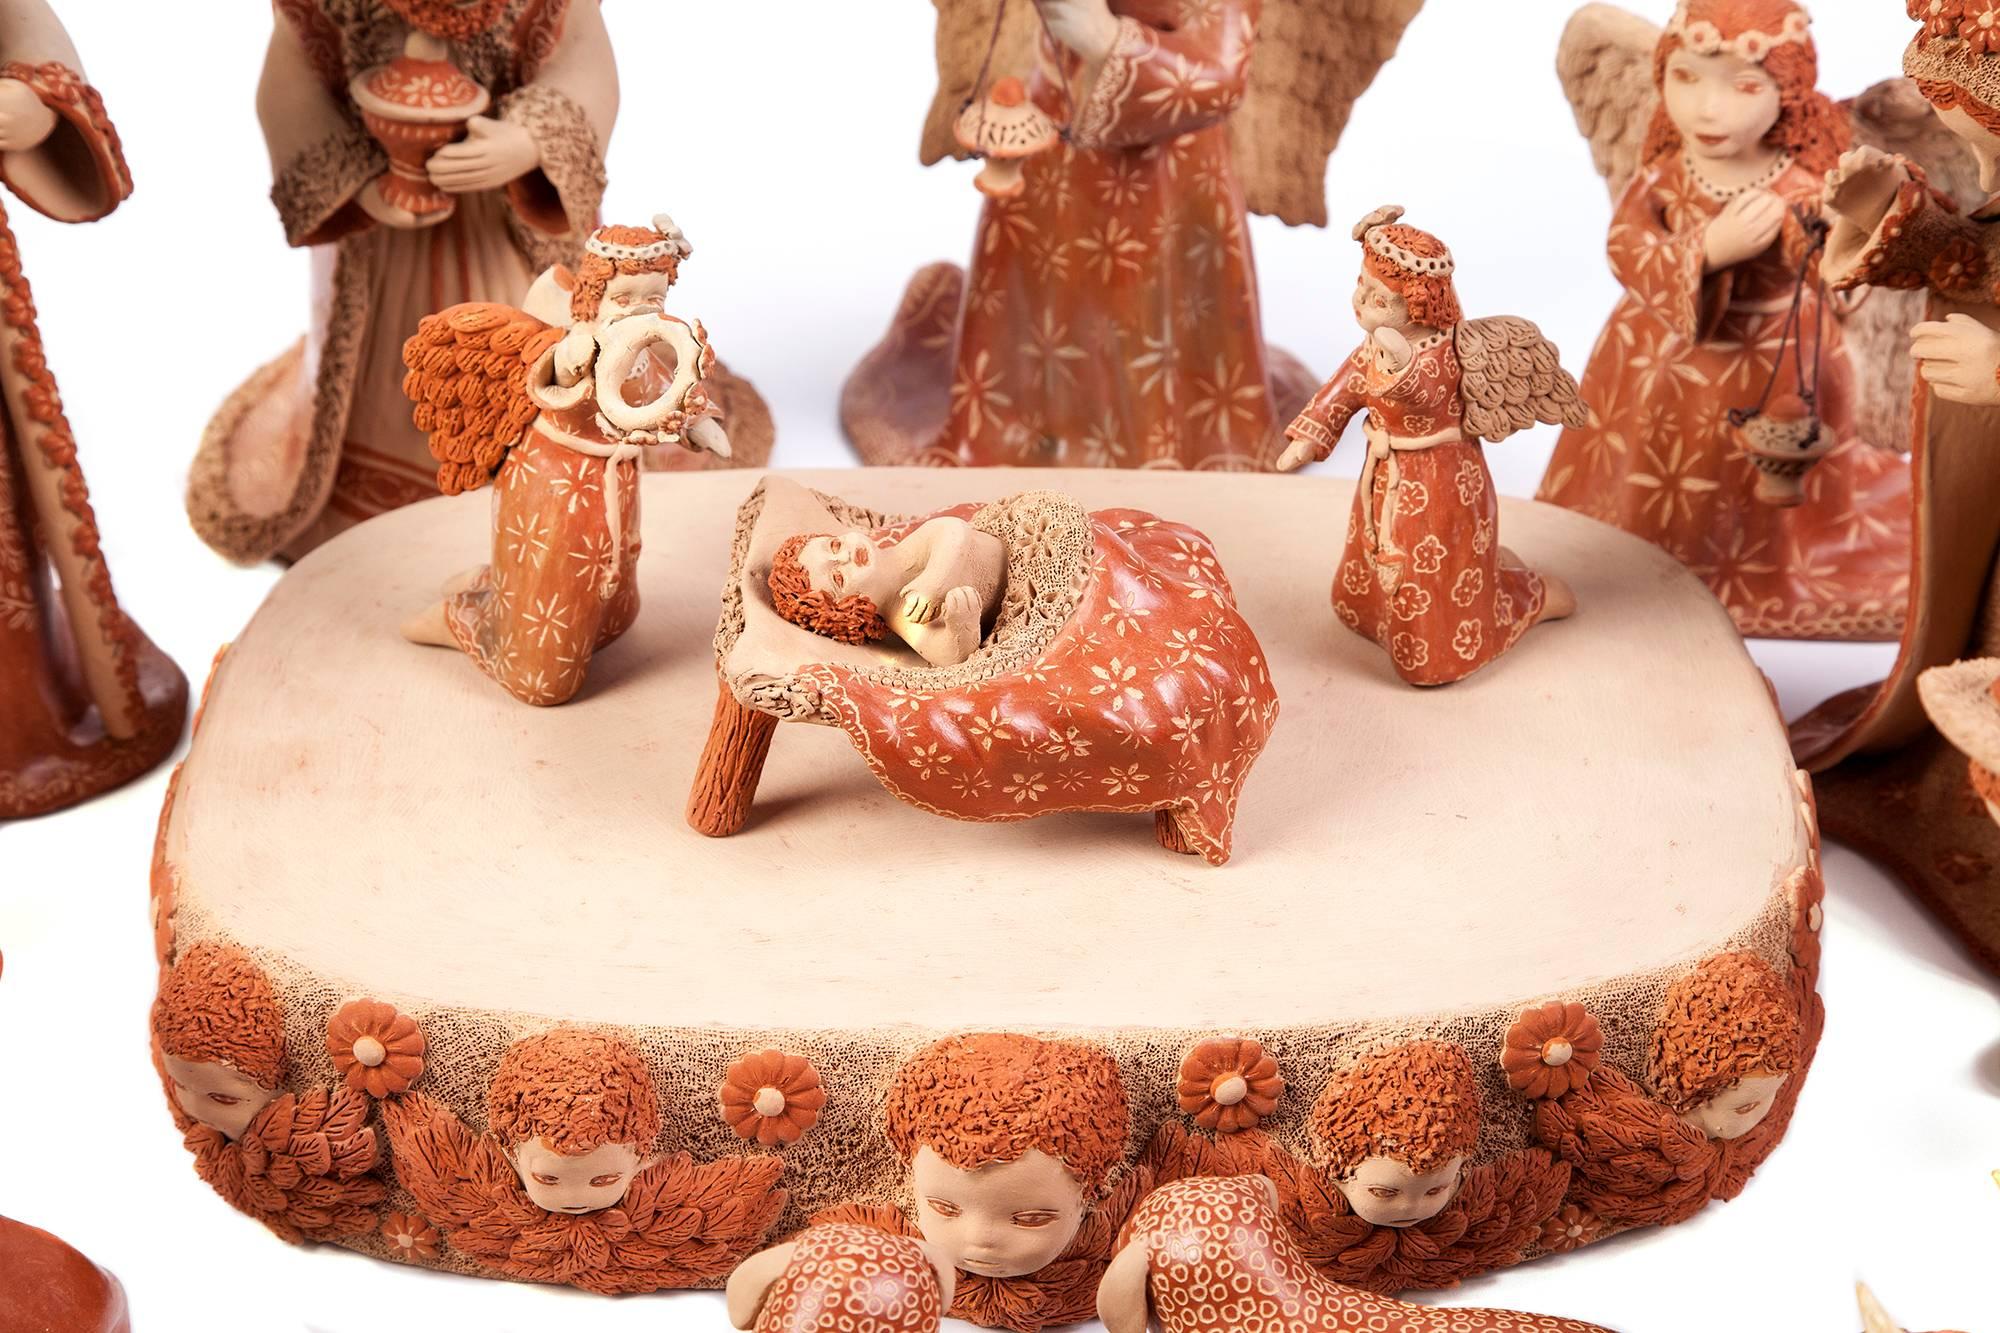 Nacimiento de Barro / Ceramics Mexican Folk Art Clay Nativity - Sculpture by Unknown